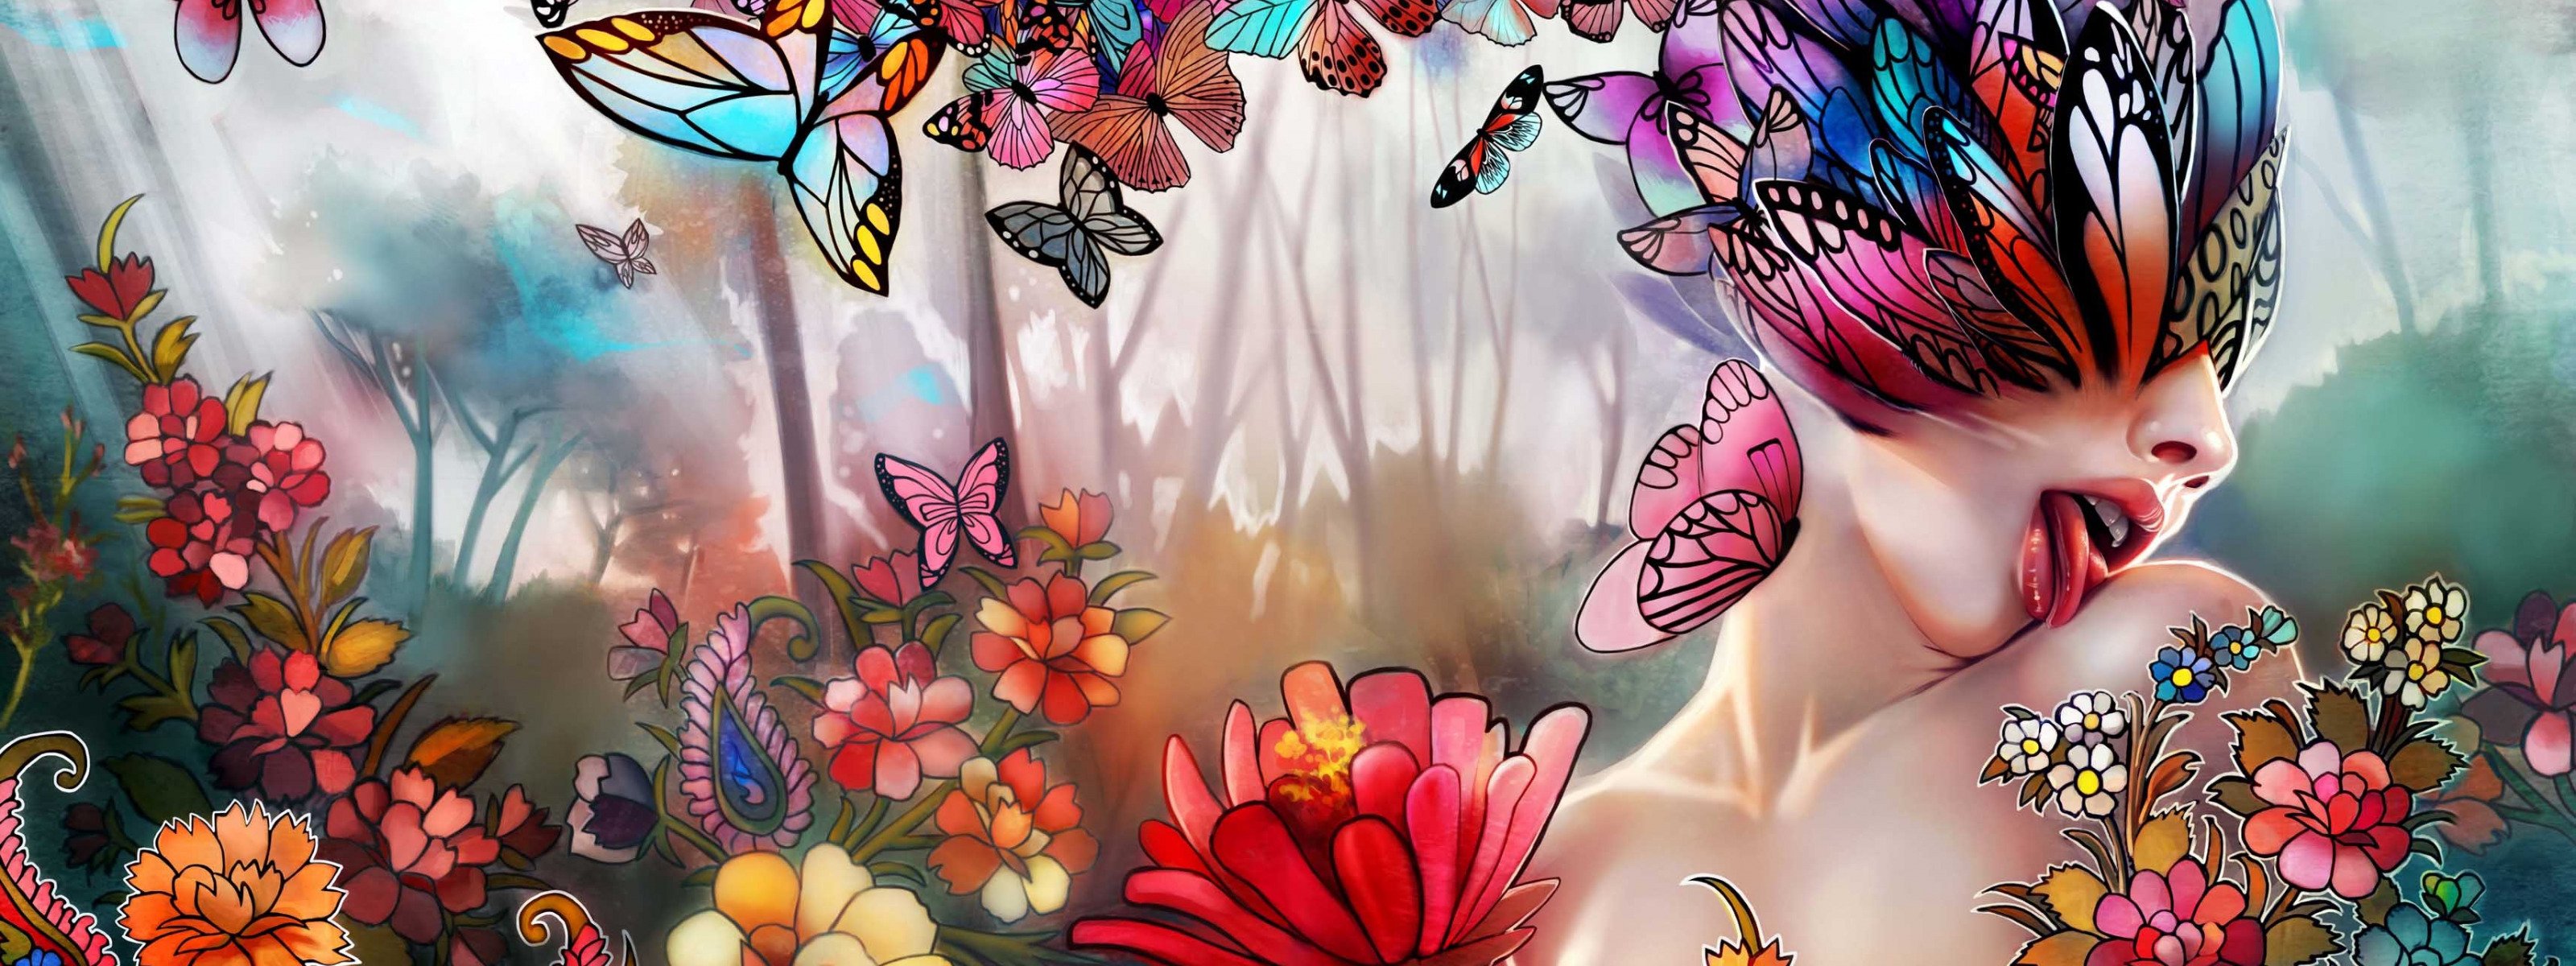 Бабочка обложка. Девушка-бабочка. Бабочка арт. Женщина бабочка. Абстрактная девушка бабочка.